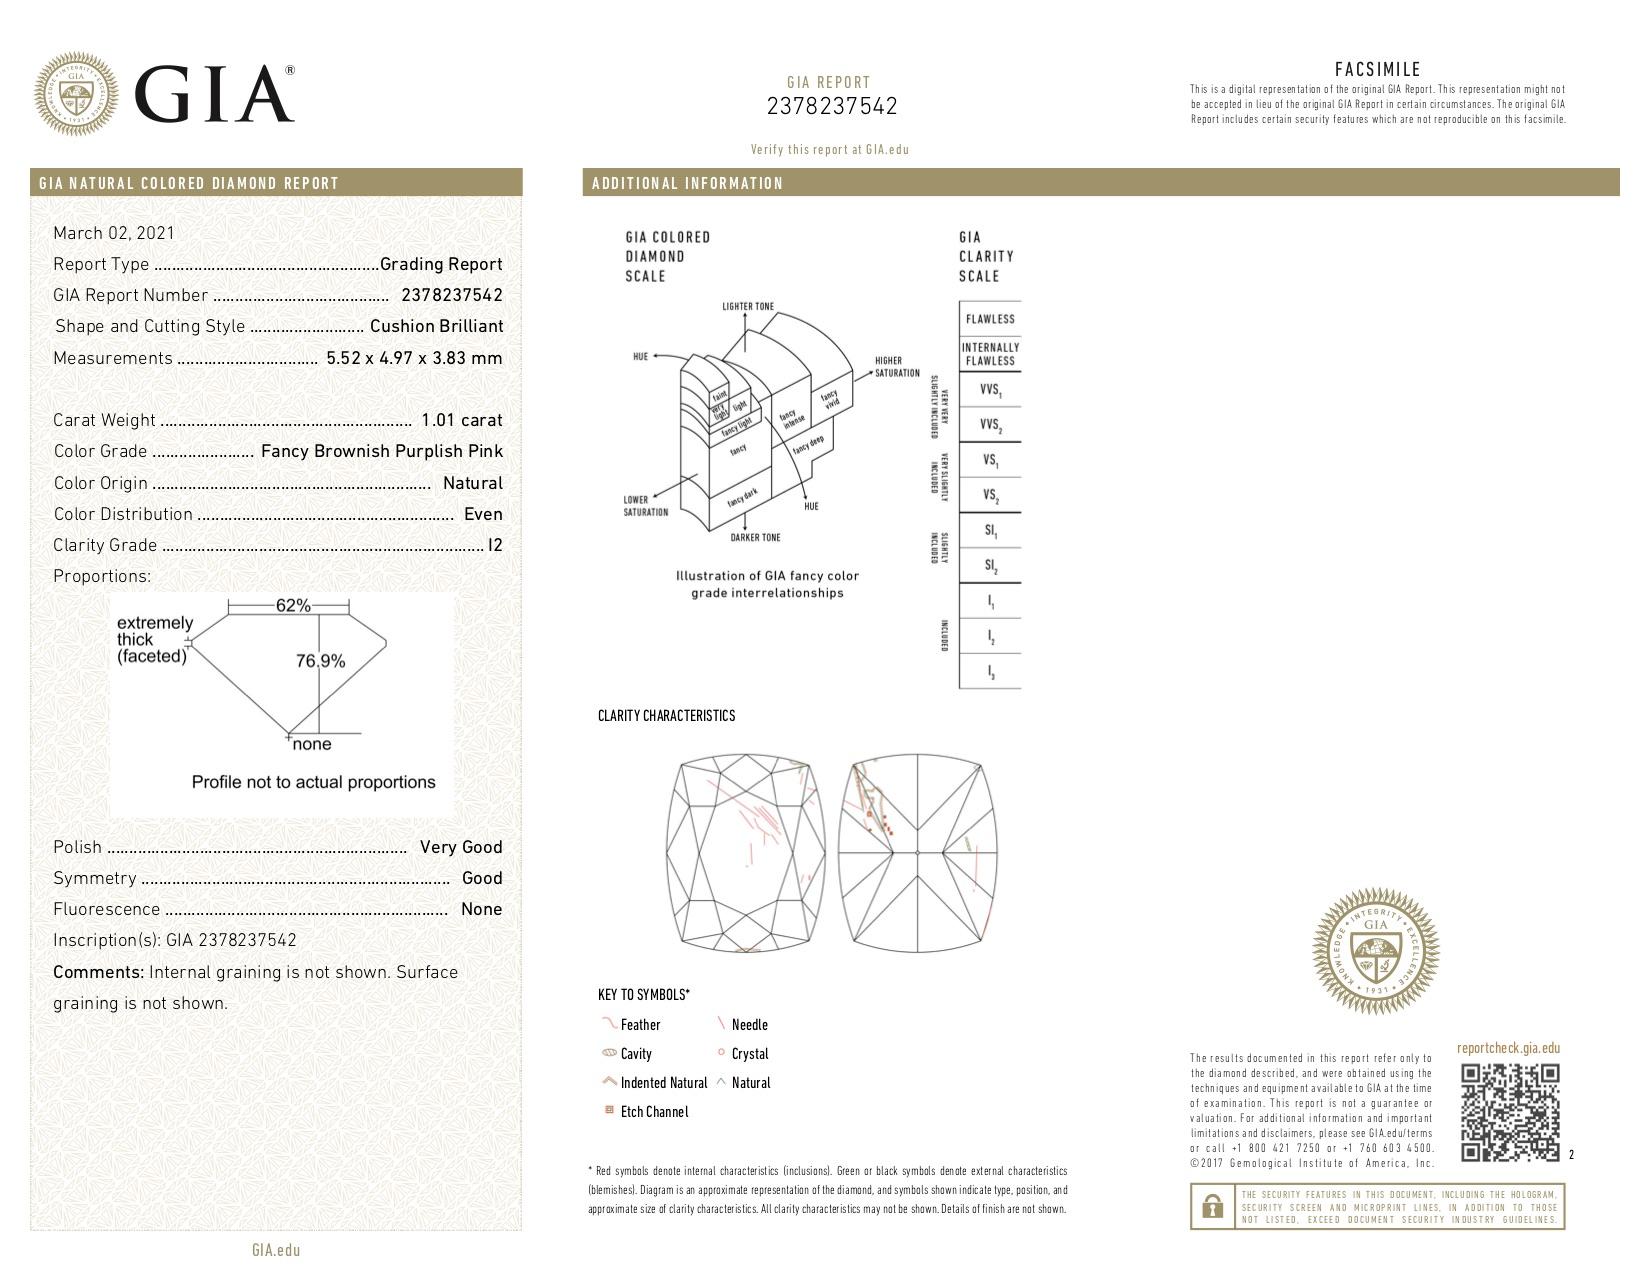 Men's GIA Certified 1.01 Carat Purplish Pink Diamond Ring For Sale